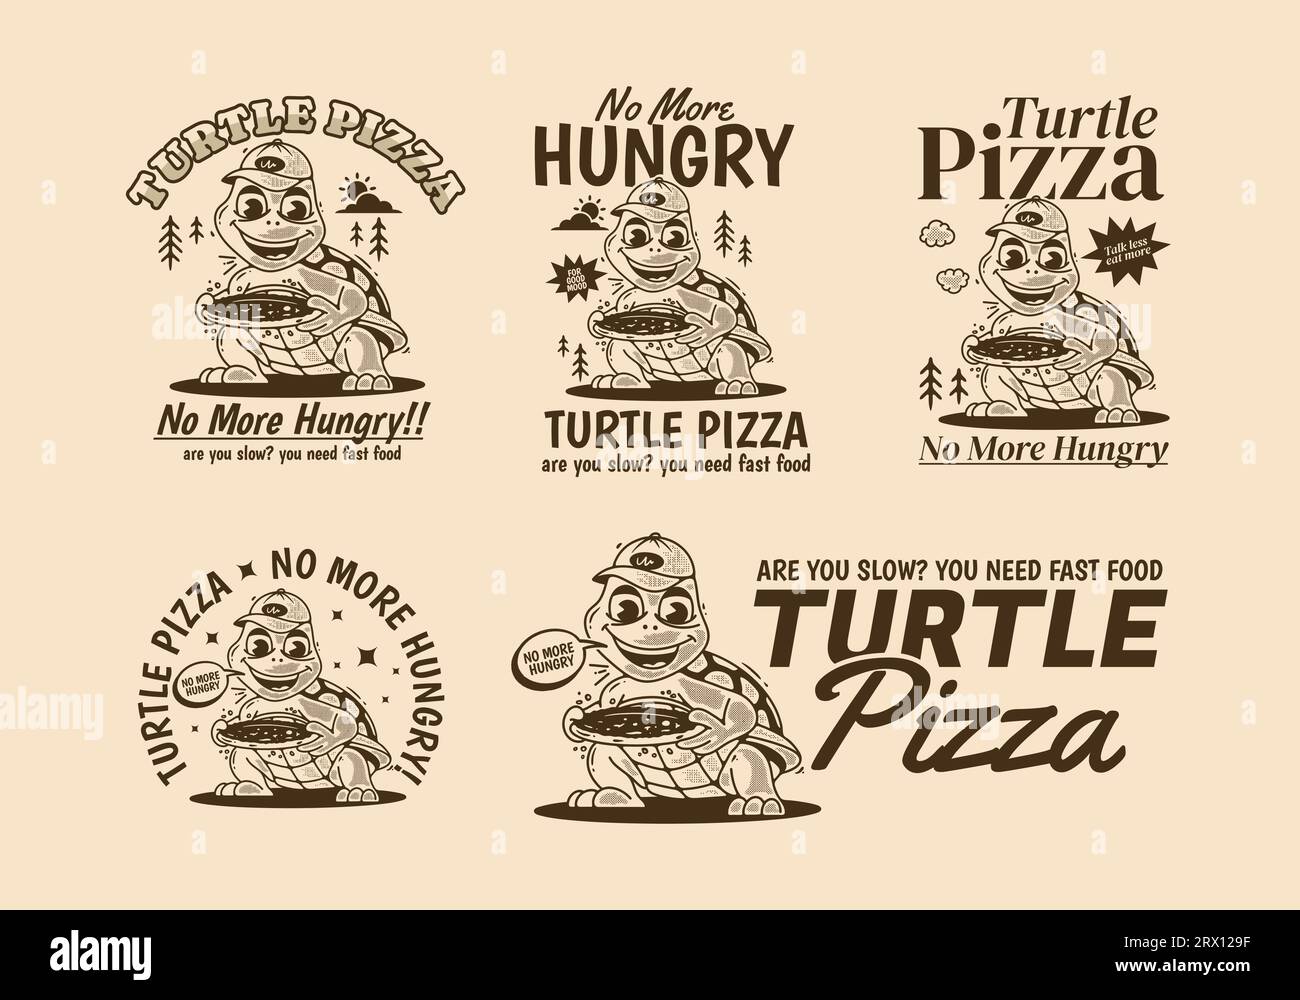 Pizza Turtle, No More Hungry, Mascot illustration de personnage d'une tortue tenant une pizza Illustration de Vecteur